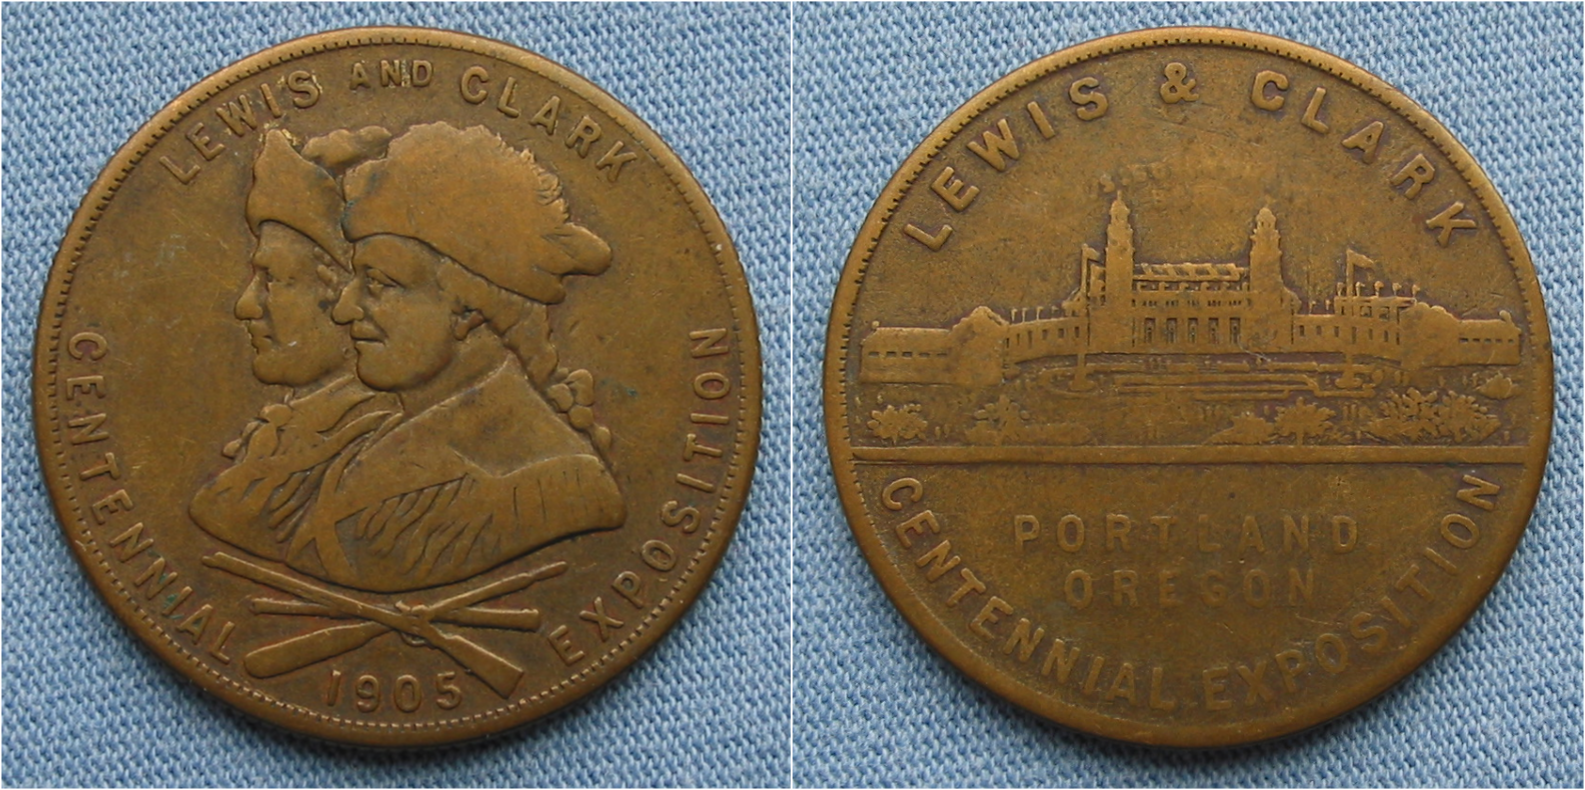 1905 Lewis & Clark Portland Oregon Centennial Exposition So-called Dollar Hk-331